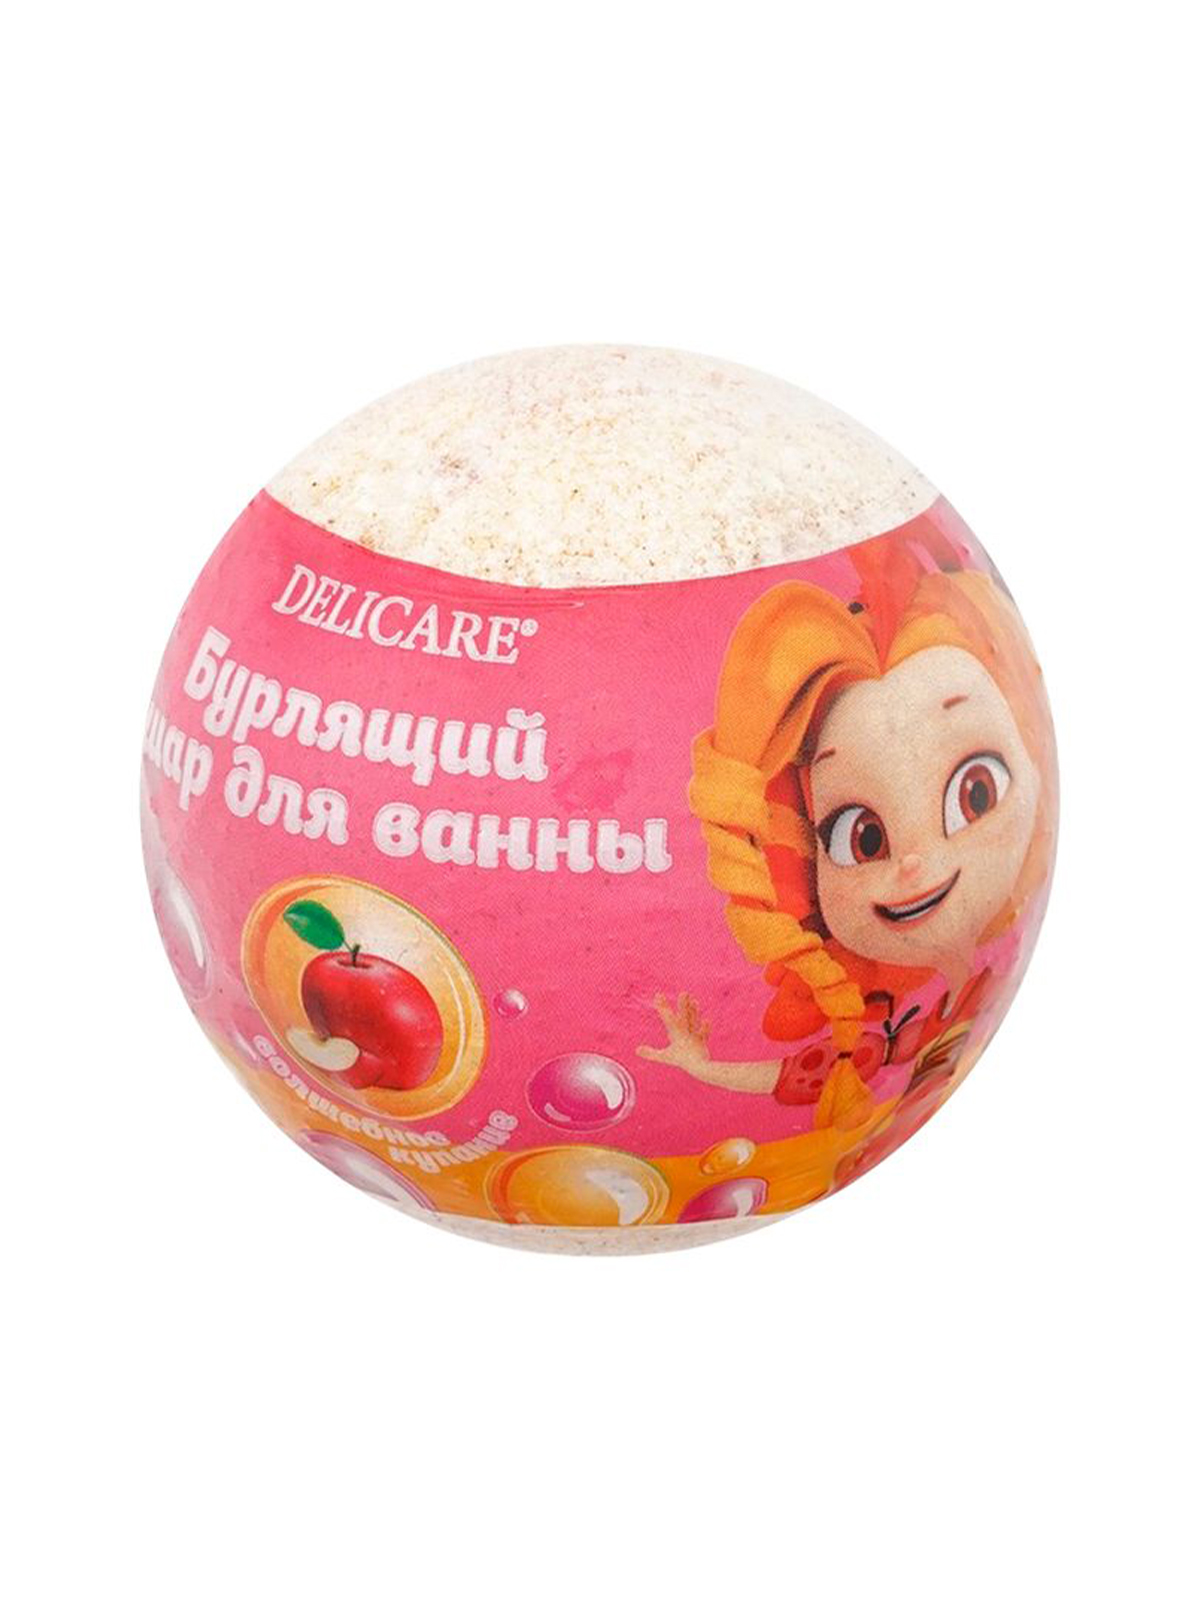 Бурлящий шар для ванн детский Delicare) розово-желтый,135 г.